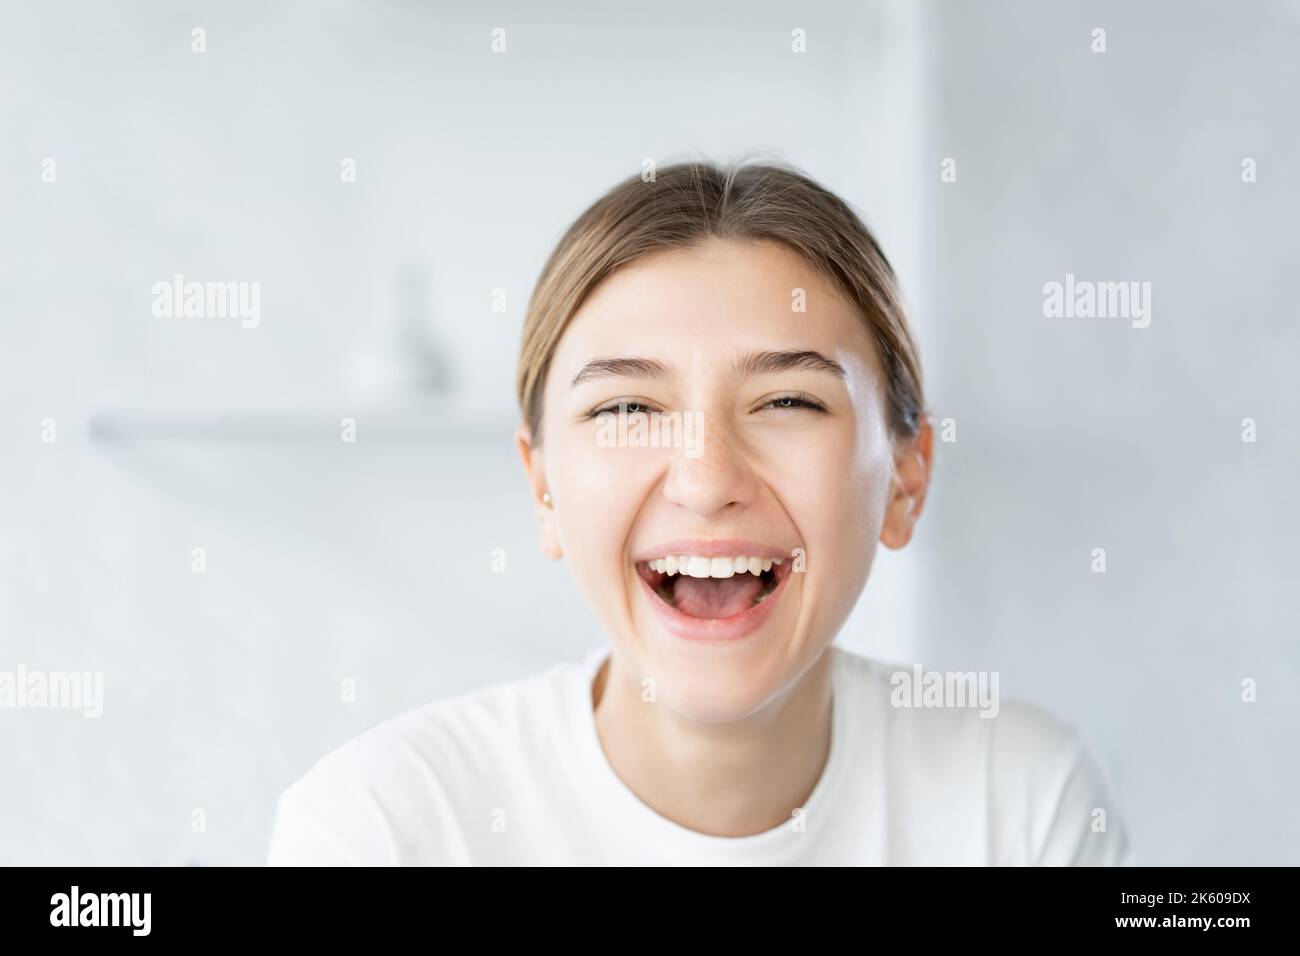 Lachende Frau Zahnpflege lächelndes Modell Gesicht Stockfoto